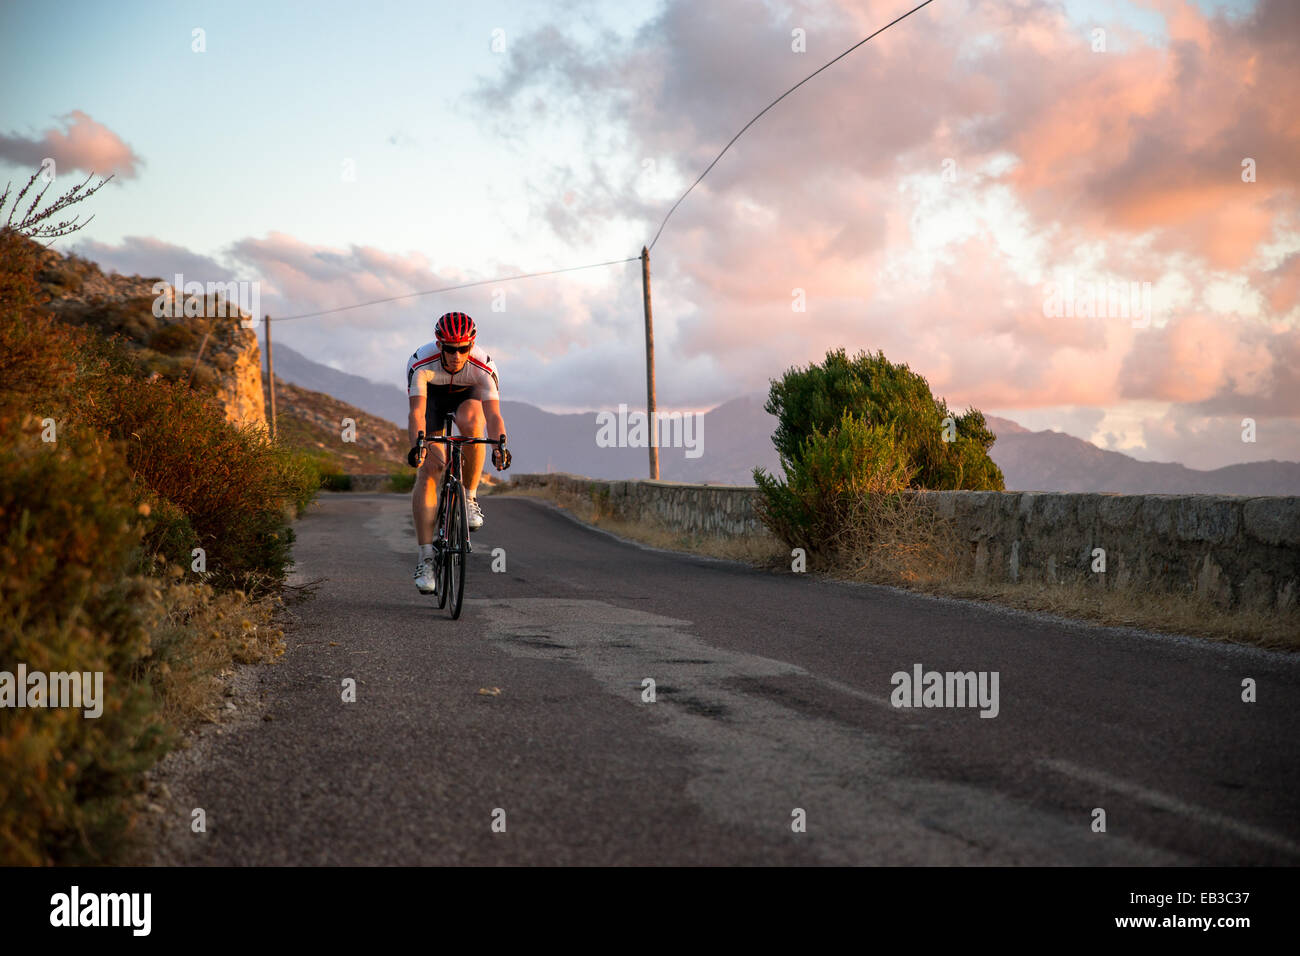 Man cycling along a coastal road at sunset, Corsica, France Stock Photo